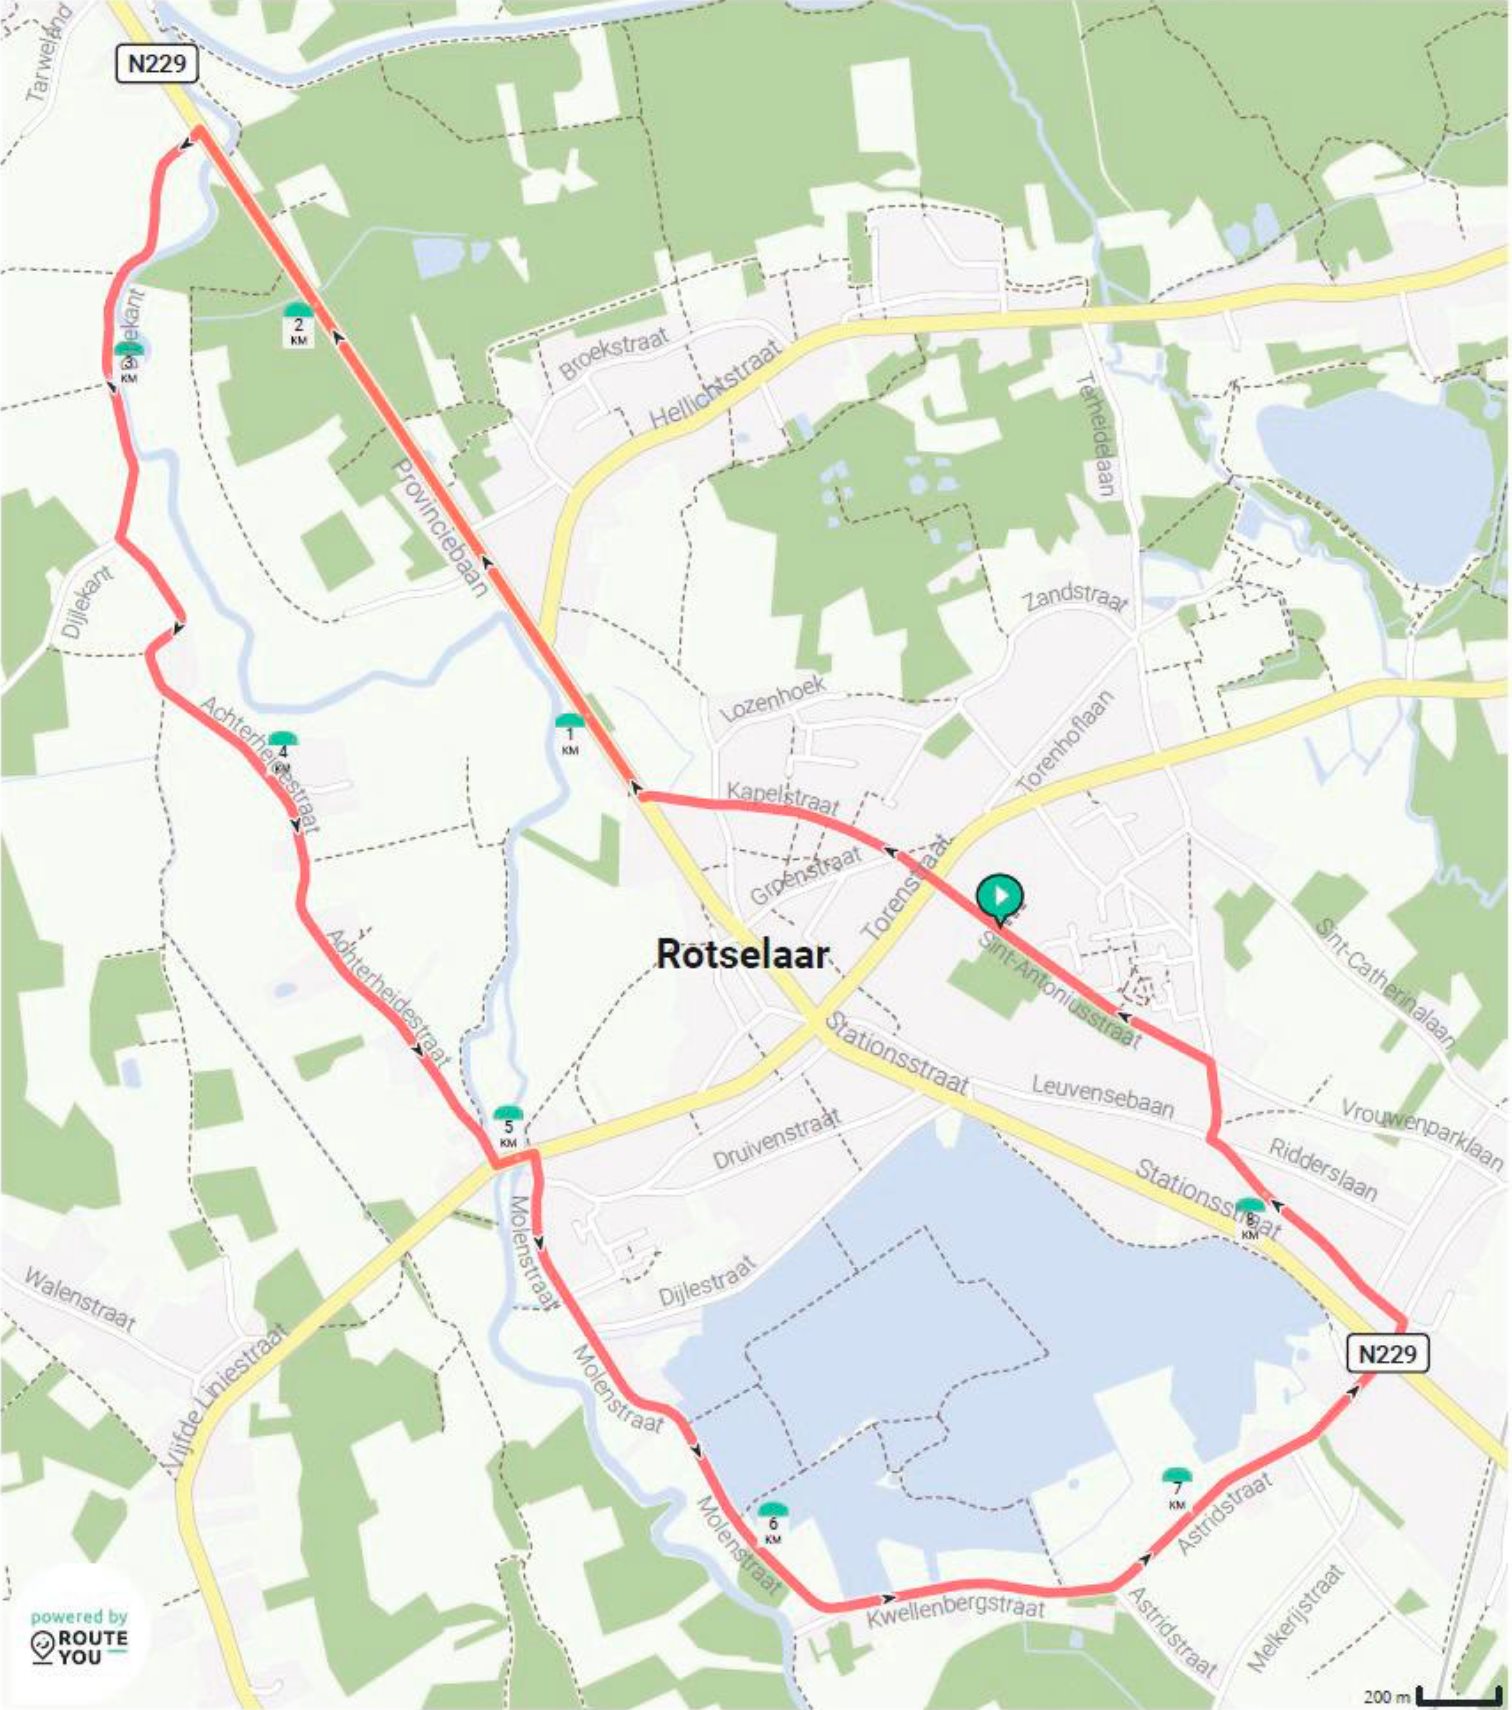 De nieuwelingenomloop in Rotselaar van de tweedaagse van het Vermarc Cycling Project